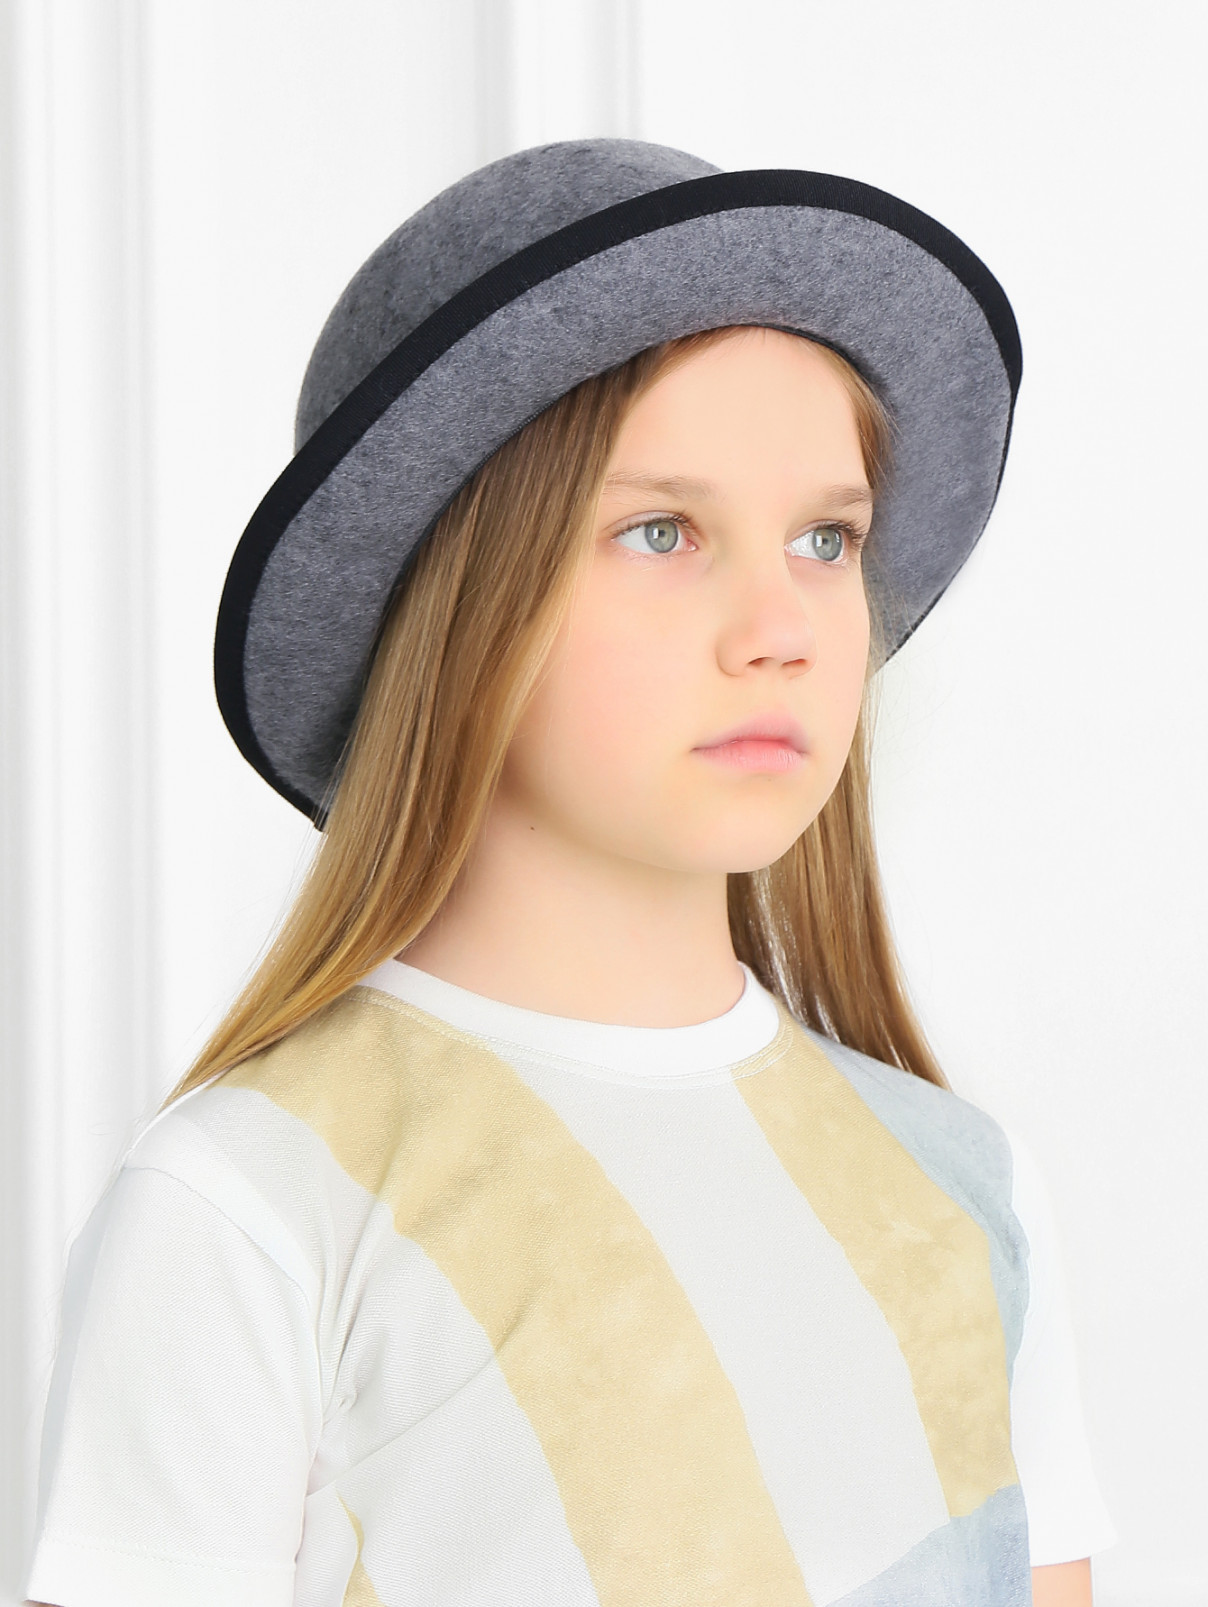 Шляпа из шерсти с контрастным декором MiMiSol  –  Модель Общий вид  – Цвет:  Серый